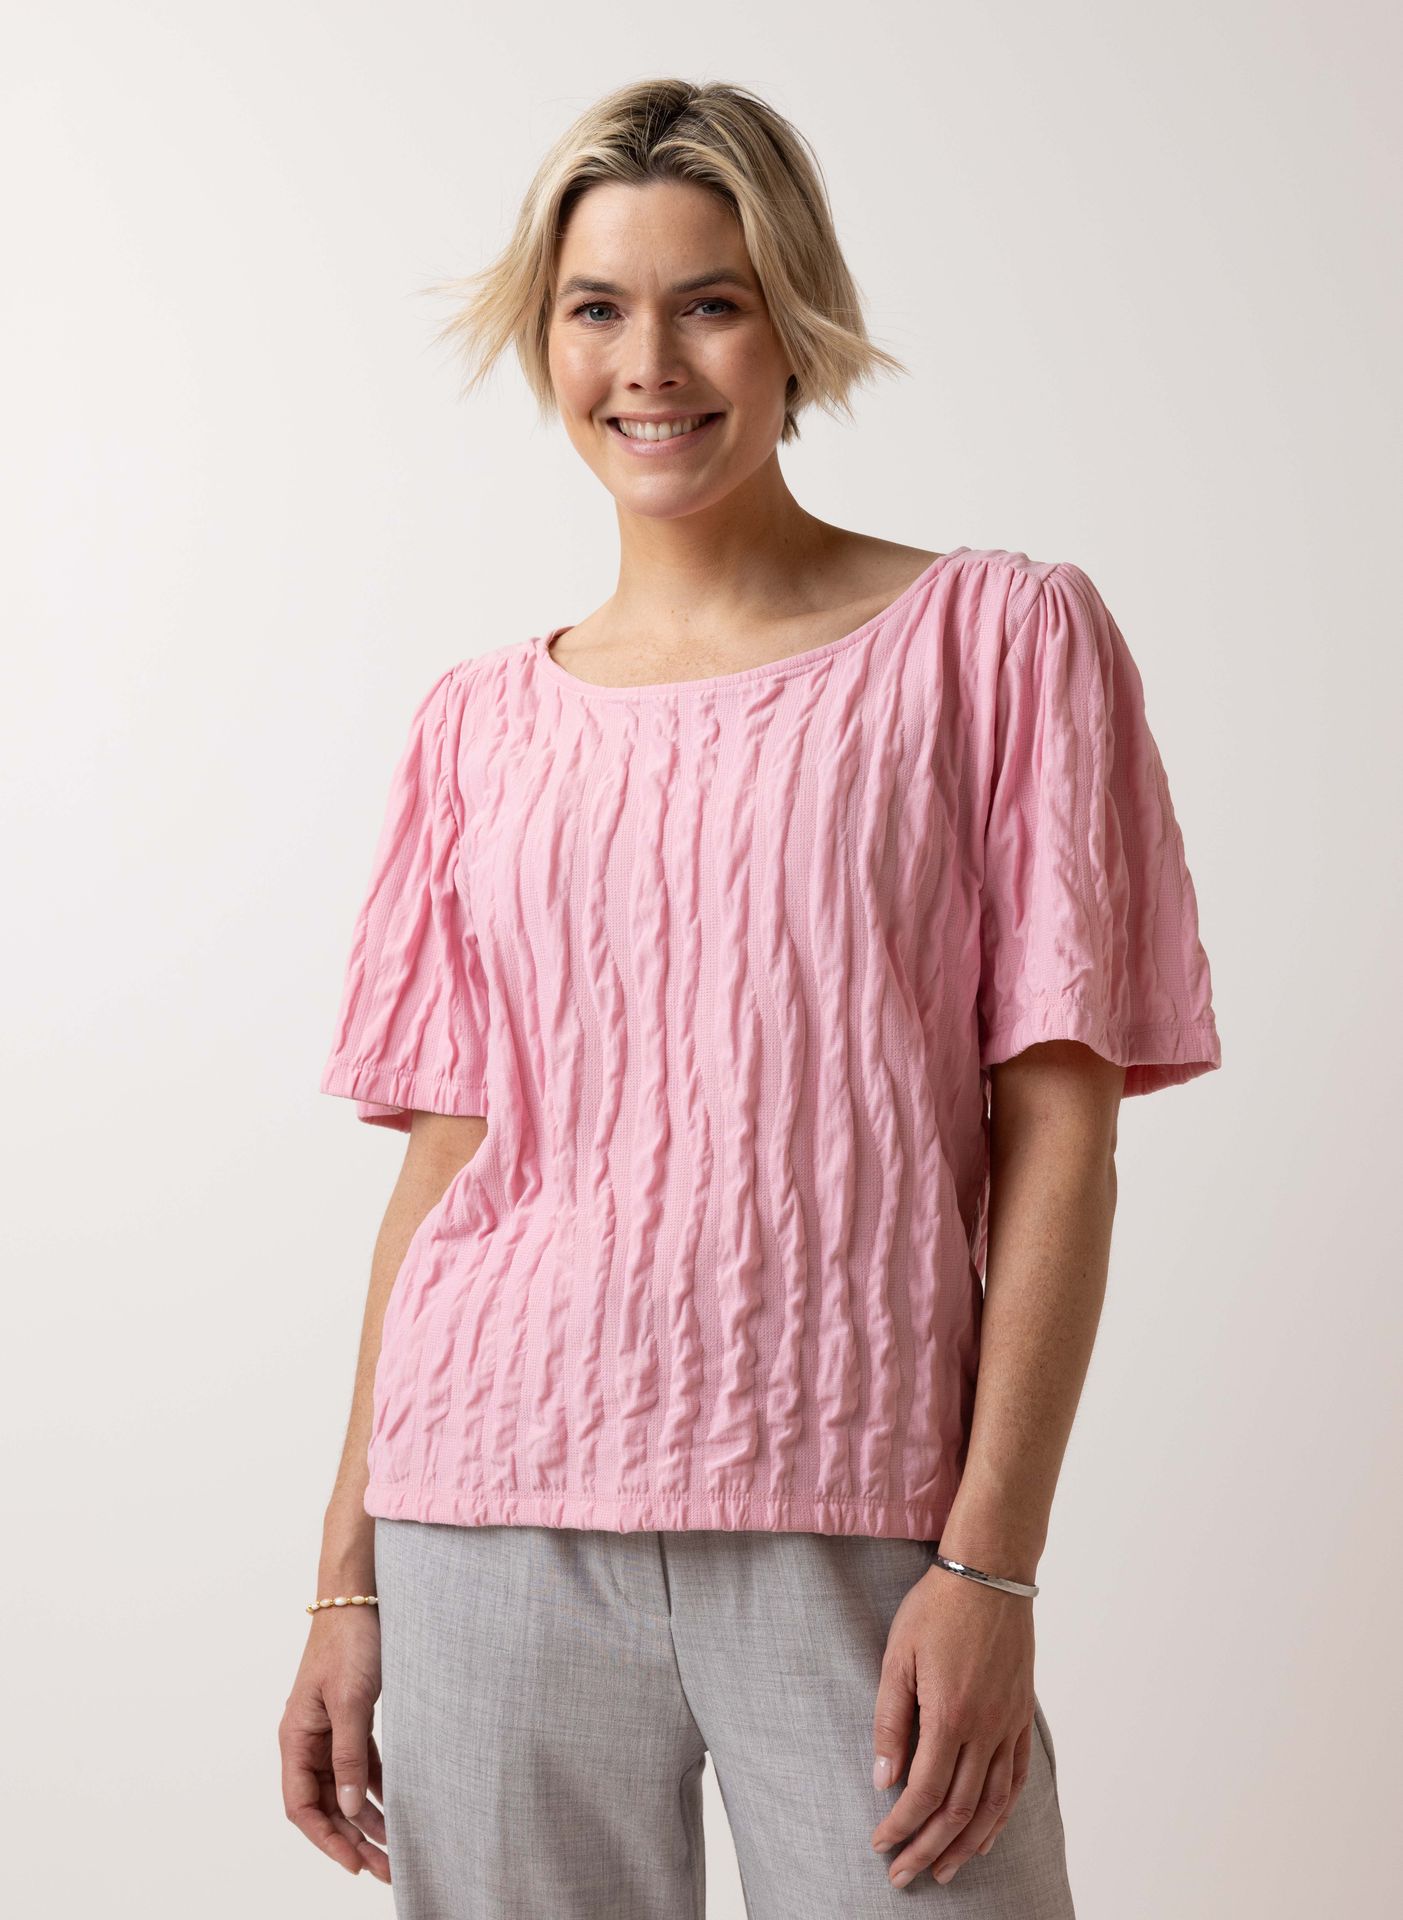 Norah Roze shirt pastel rose 214791-903